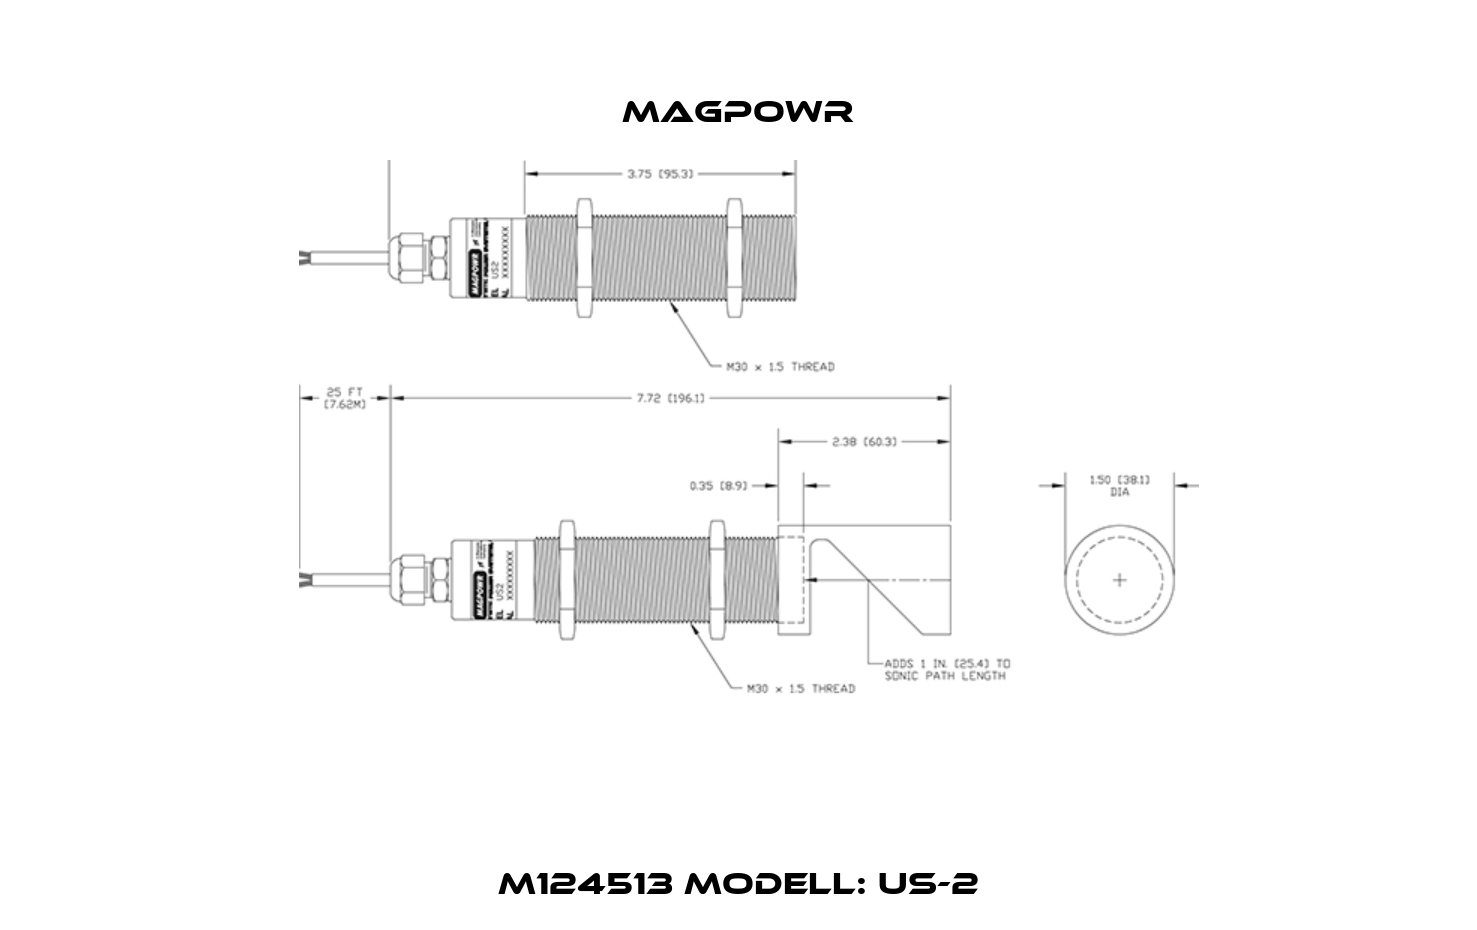 M124513 Modell: US-2 Magpowr